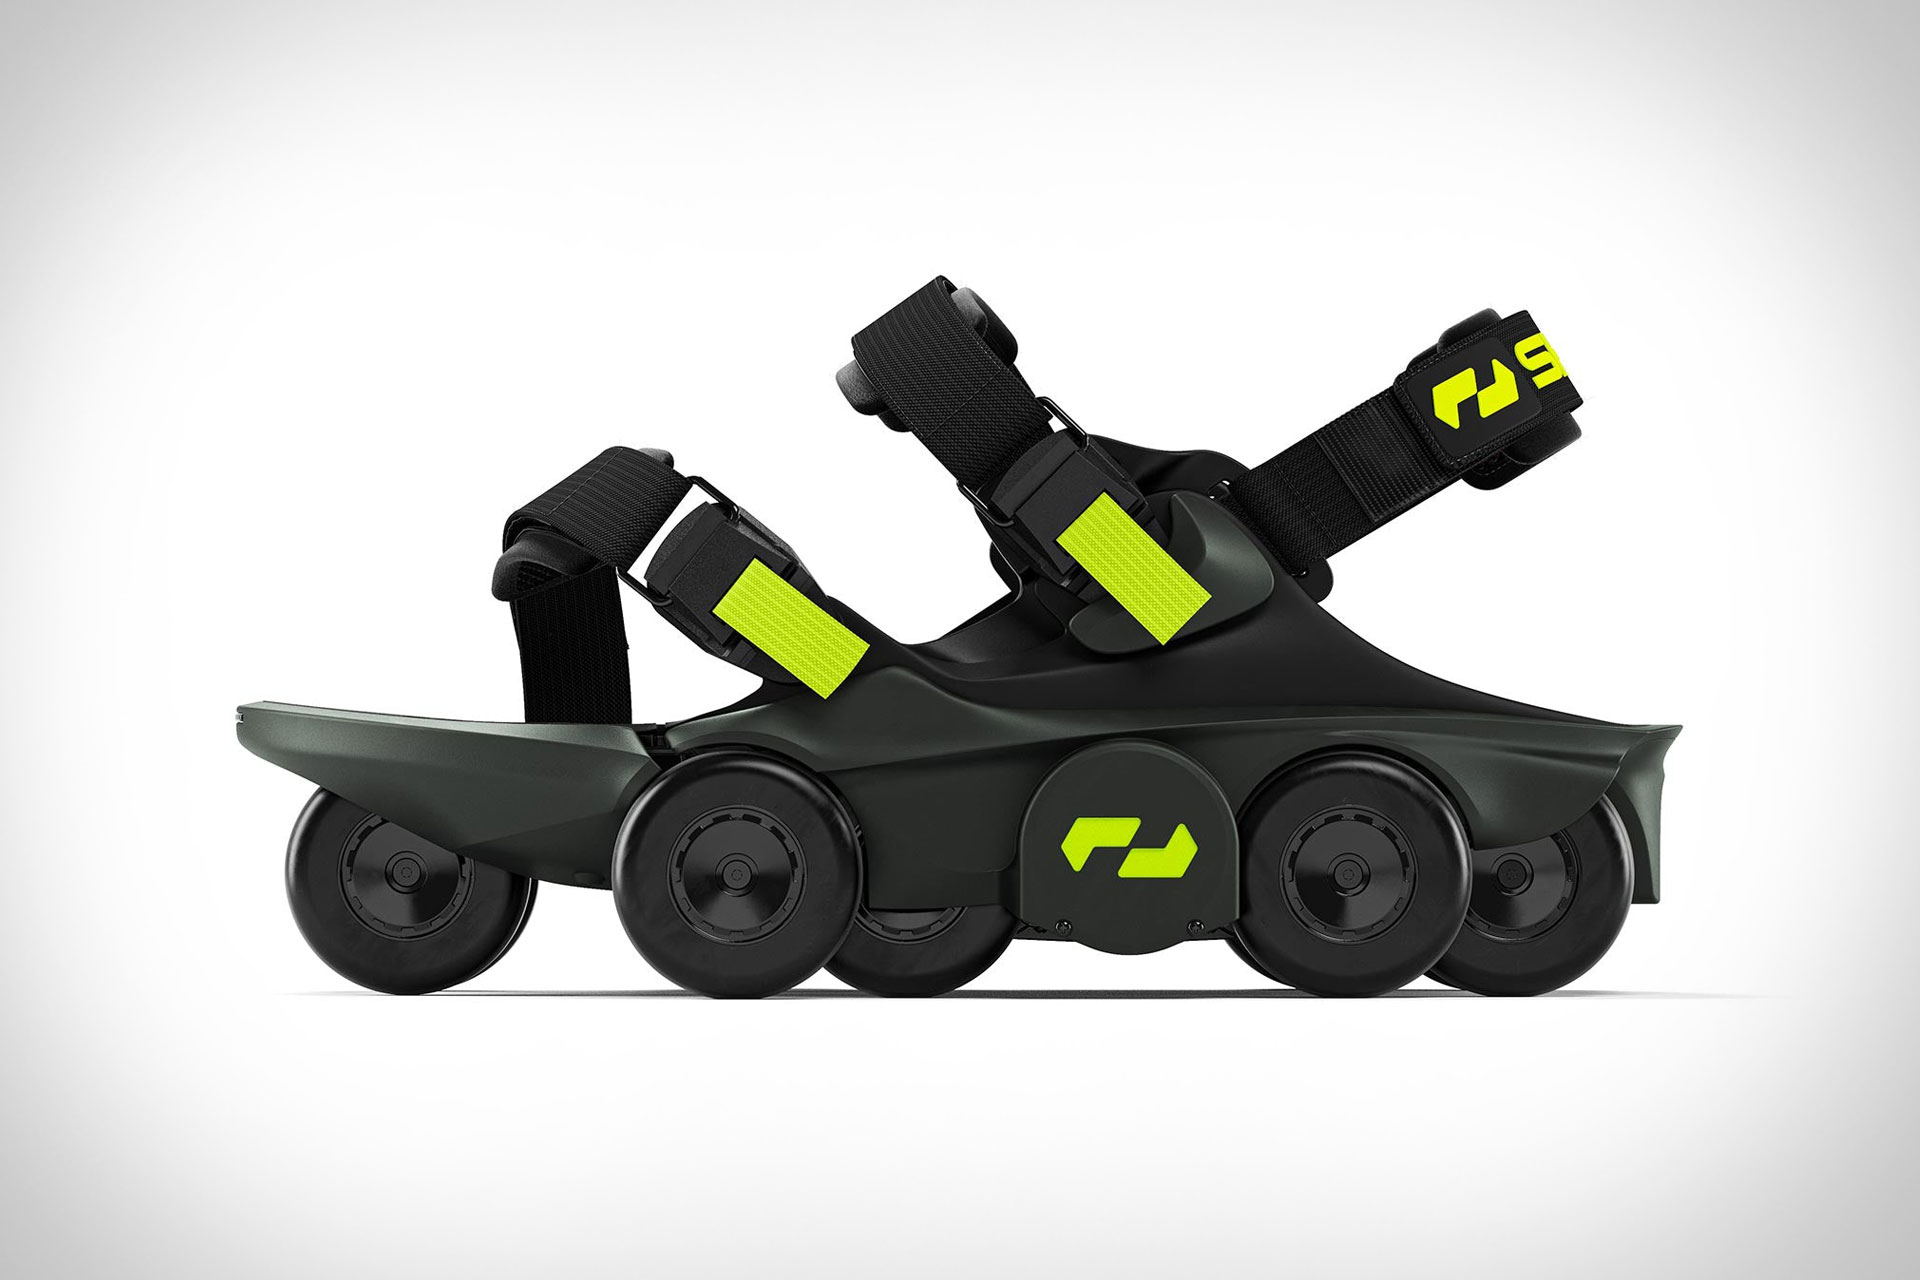 revamped-moonwalker-x-robotic-shoes-get-lighter-and-smarter